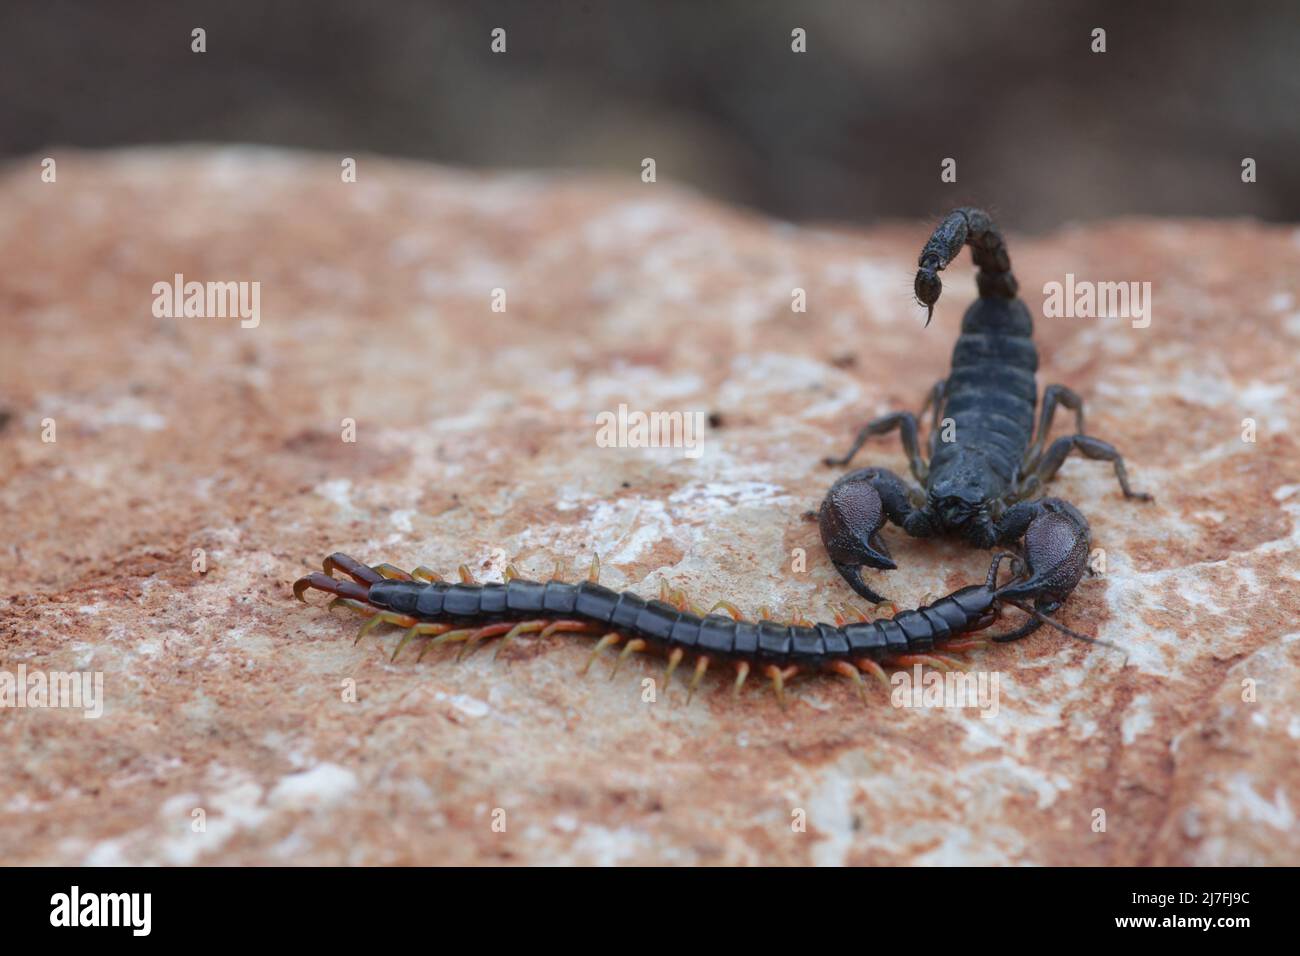 Scorpion noir israélien (Scorpio maurus fuscus) mange un Centipede photographié en Israël Israël en Octobre Banque D'Images